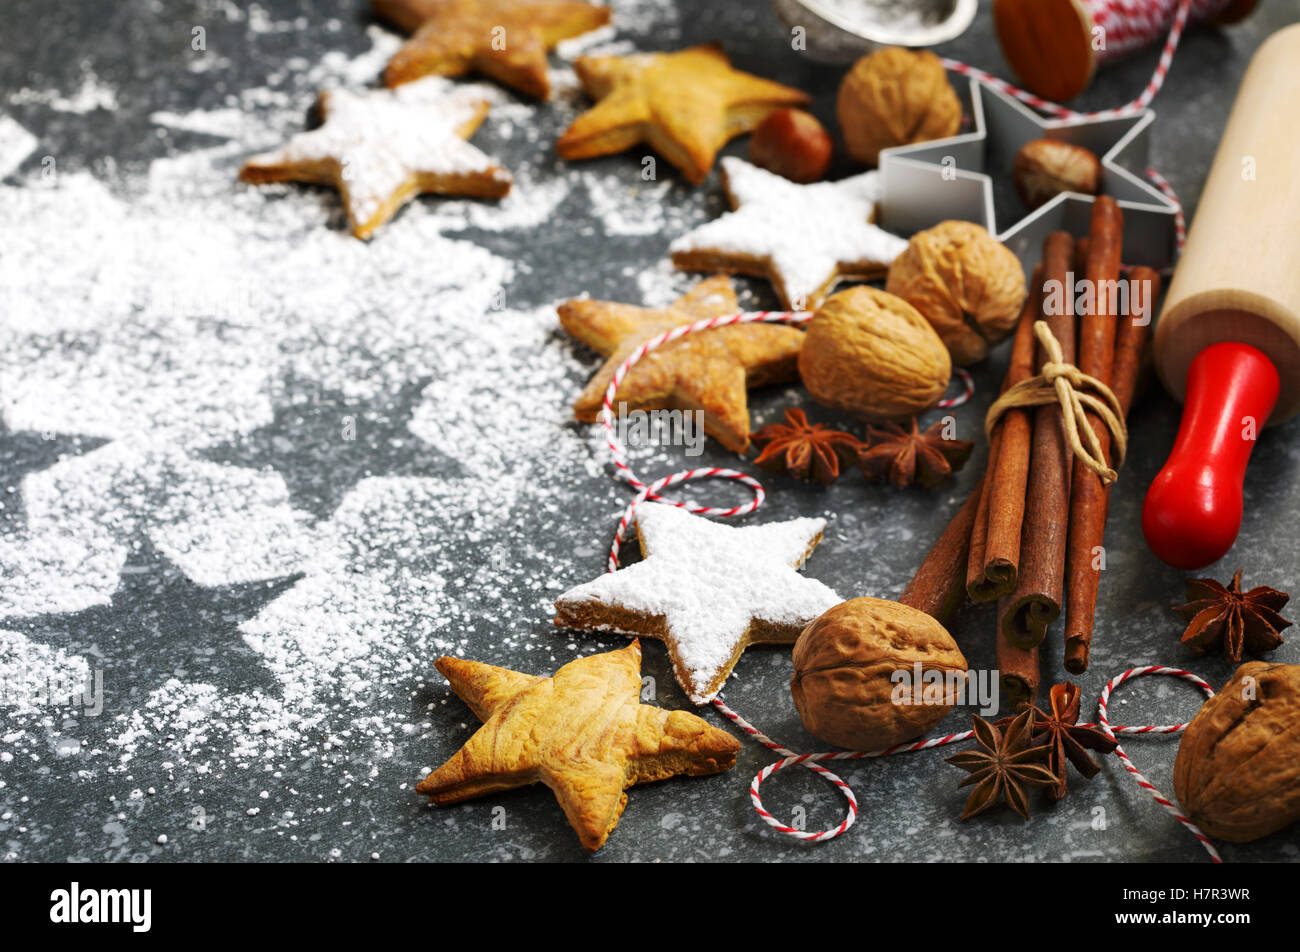 Les biscuits de Noël, broche du rouleau, cinnmon, écrous et emporte-pièce sur fond sombre Banque D'Images